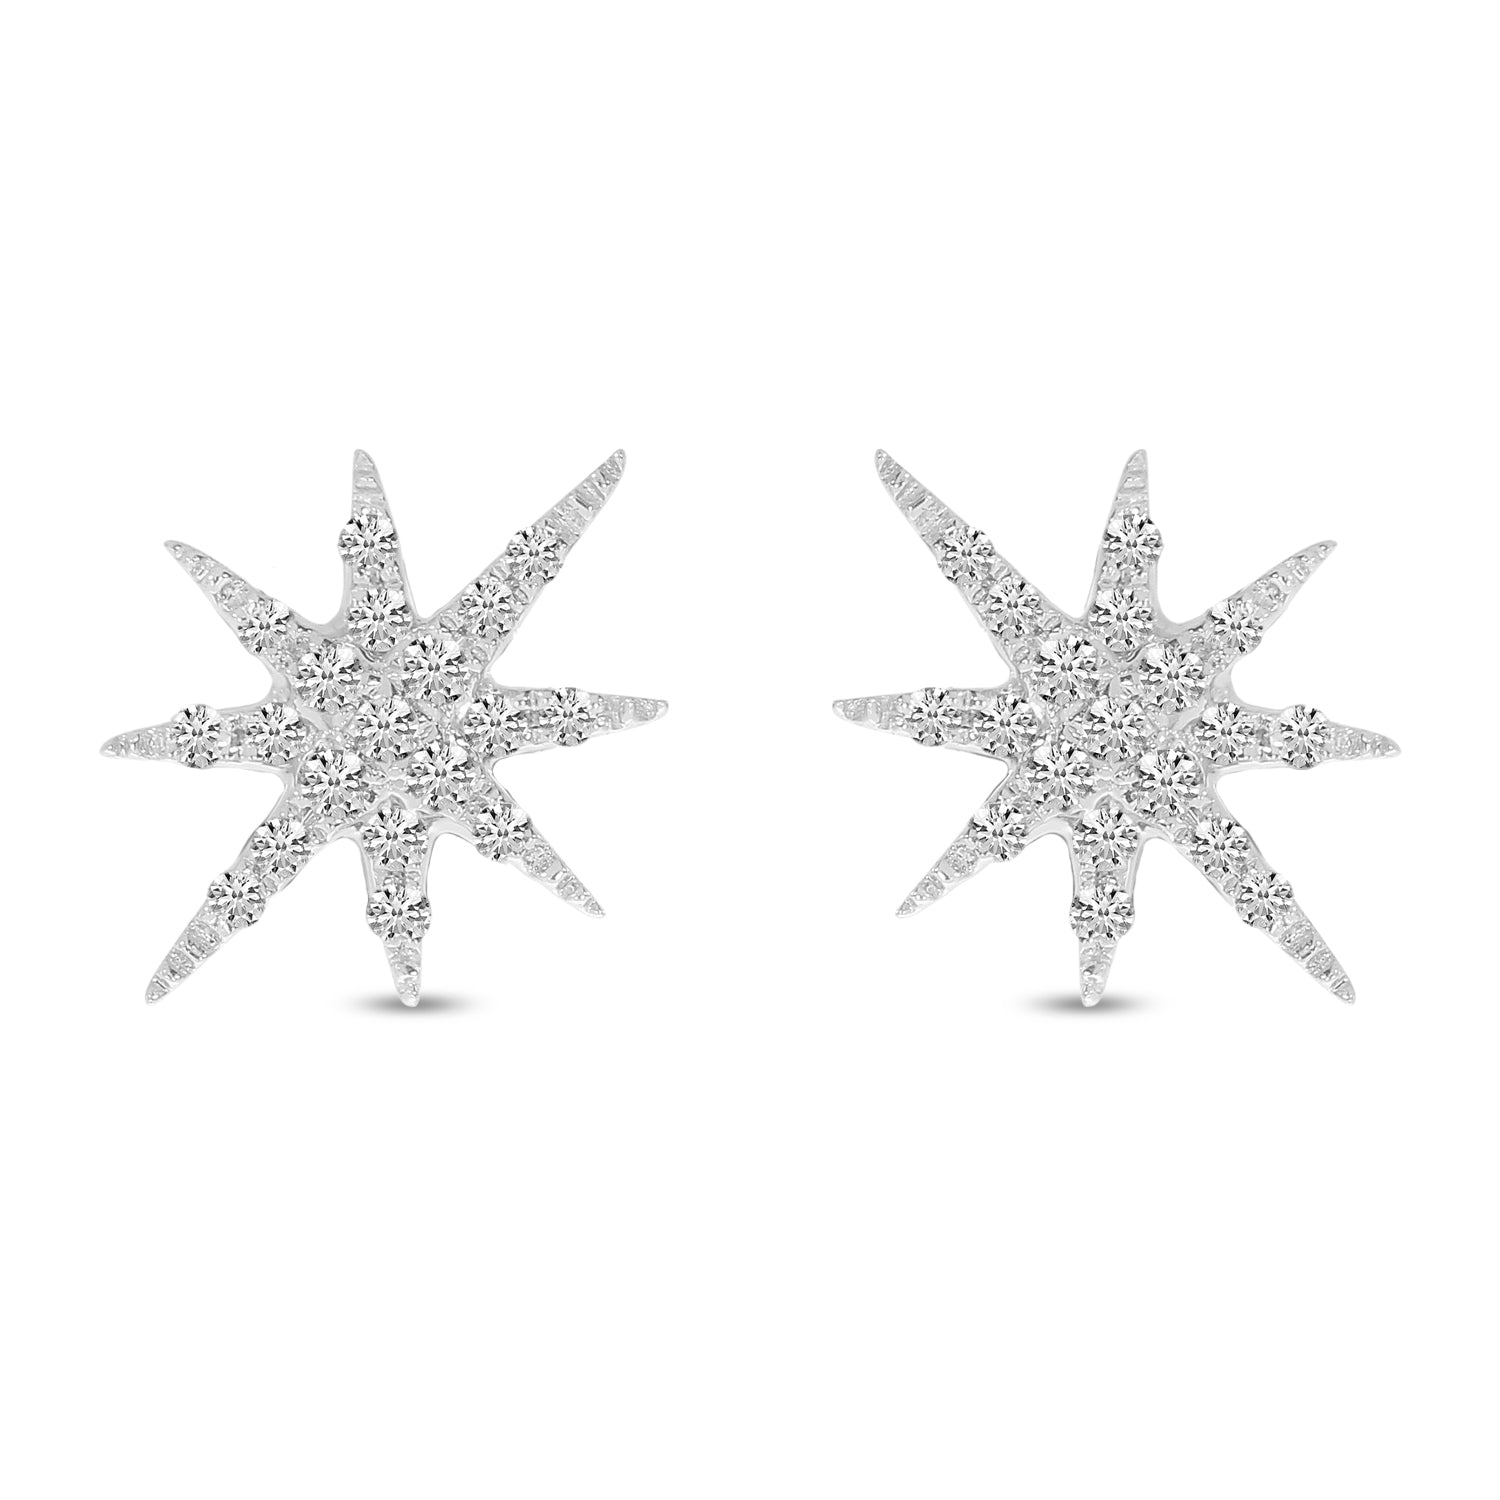 DIAMOND STARBURST EARRINGS E10412W